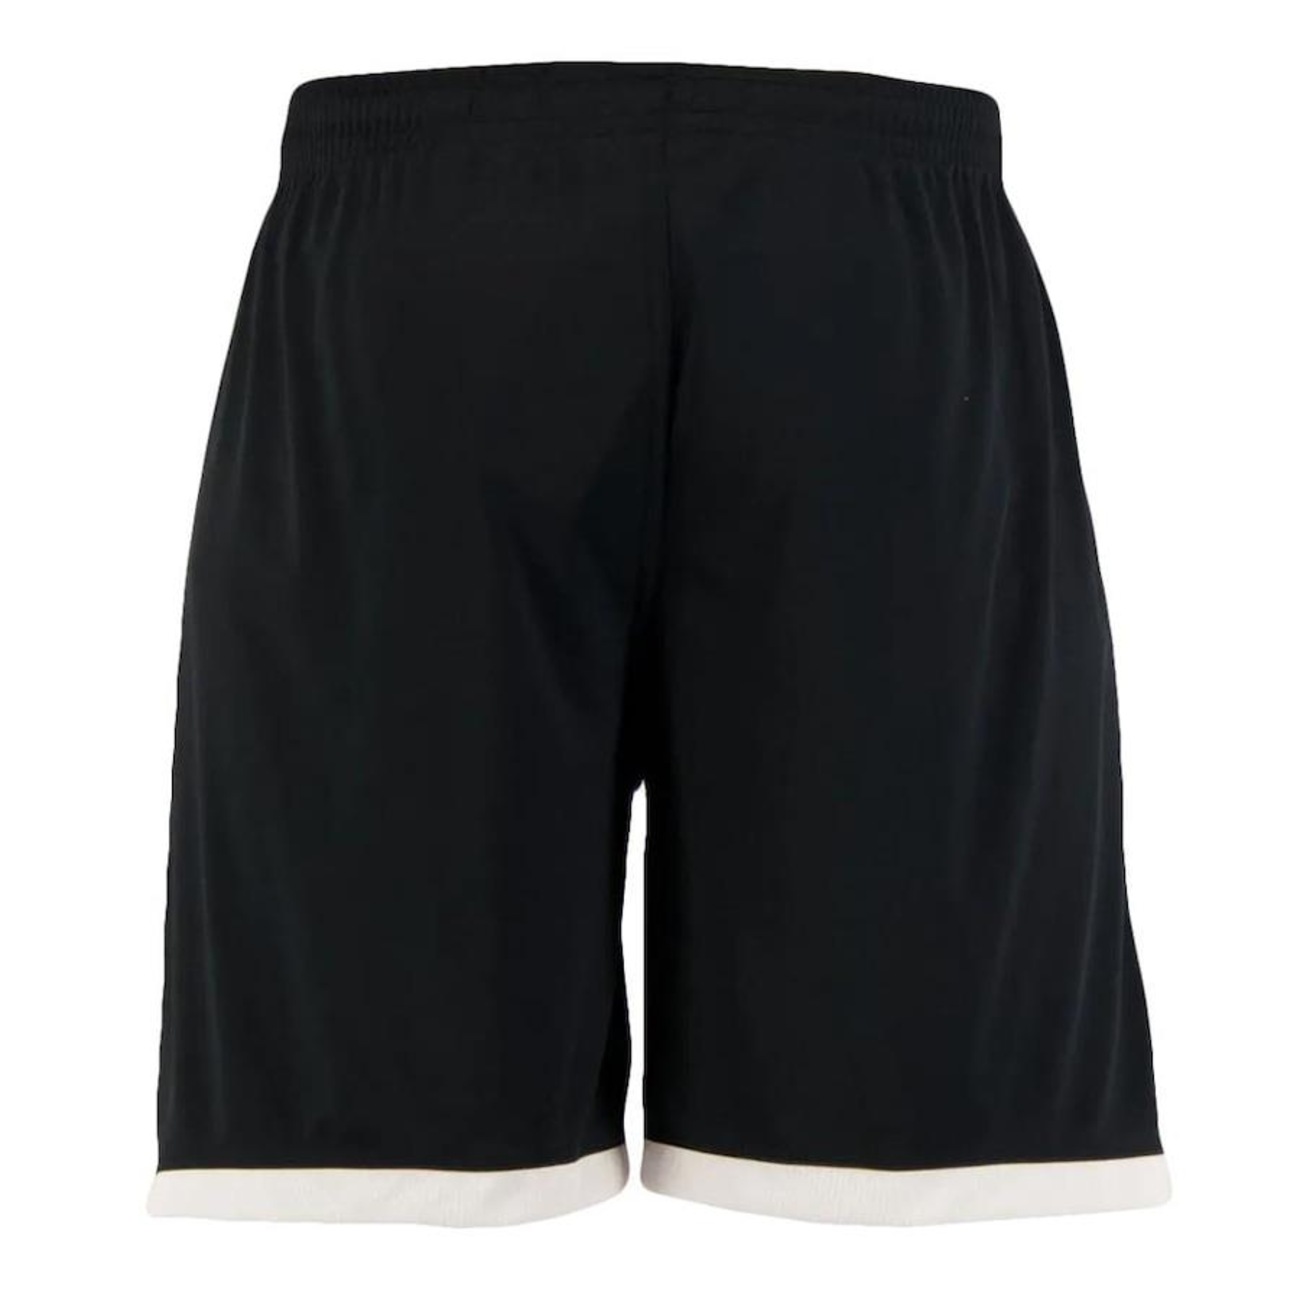 adidas Club Tennis Shorts - Black